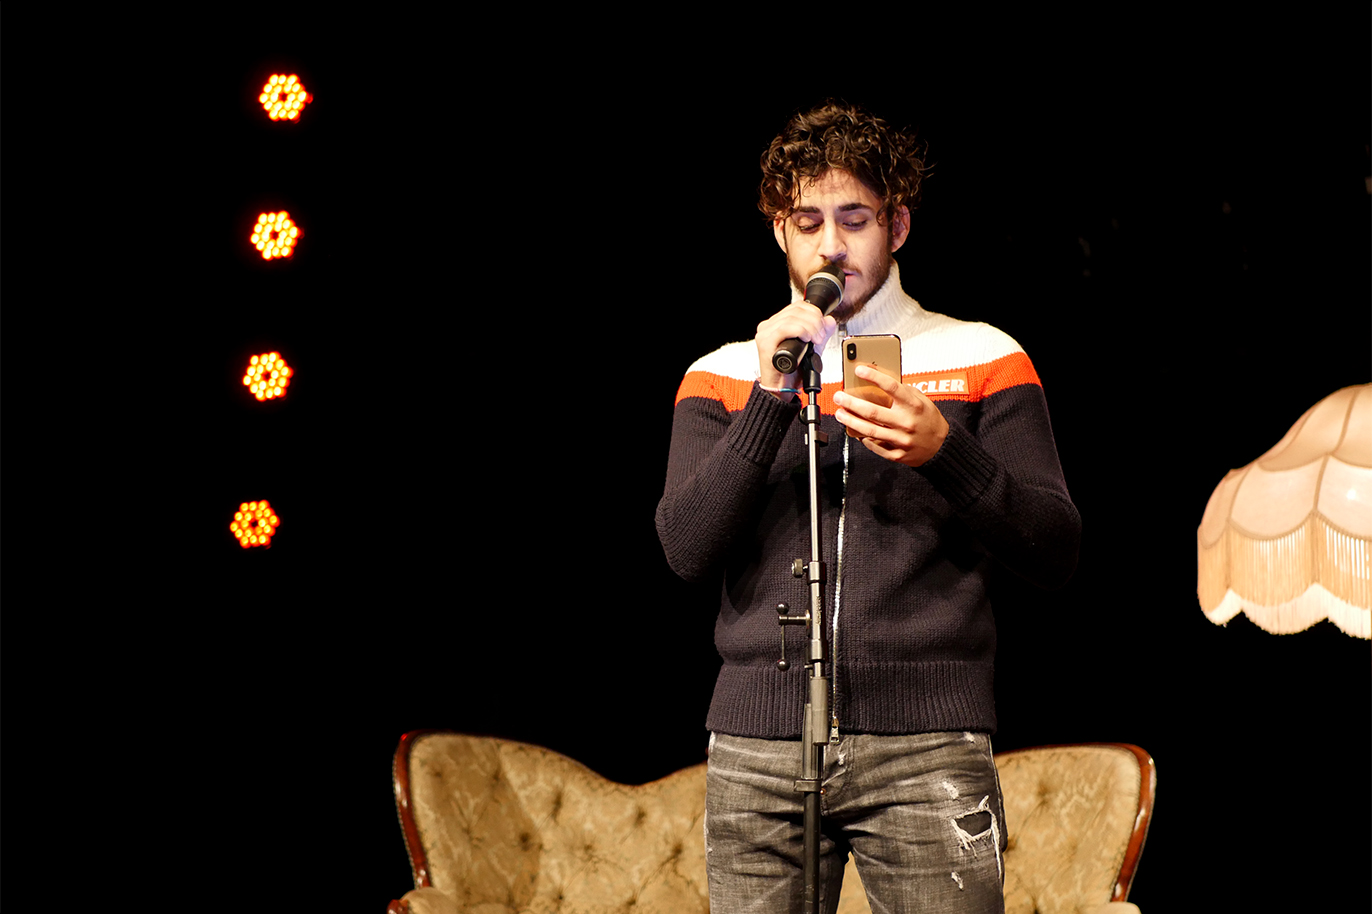 Poeten Ali Junior står i strålkastarljus på scenen och läser en dikt från mobiltelefonen.